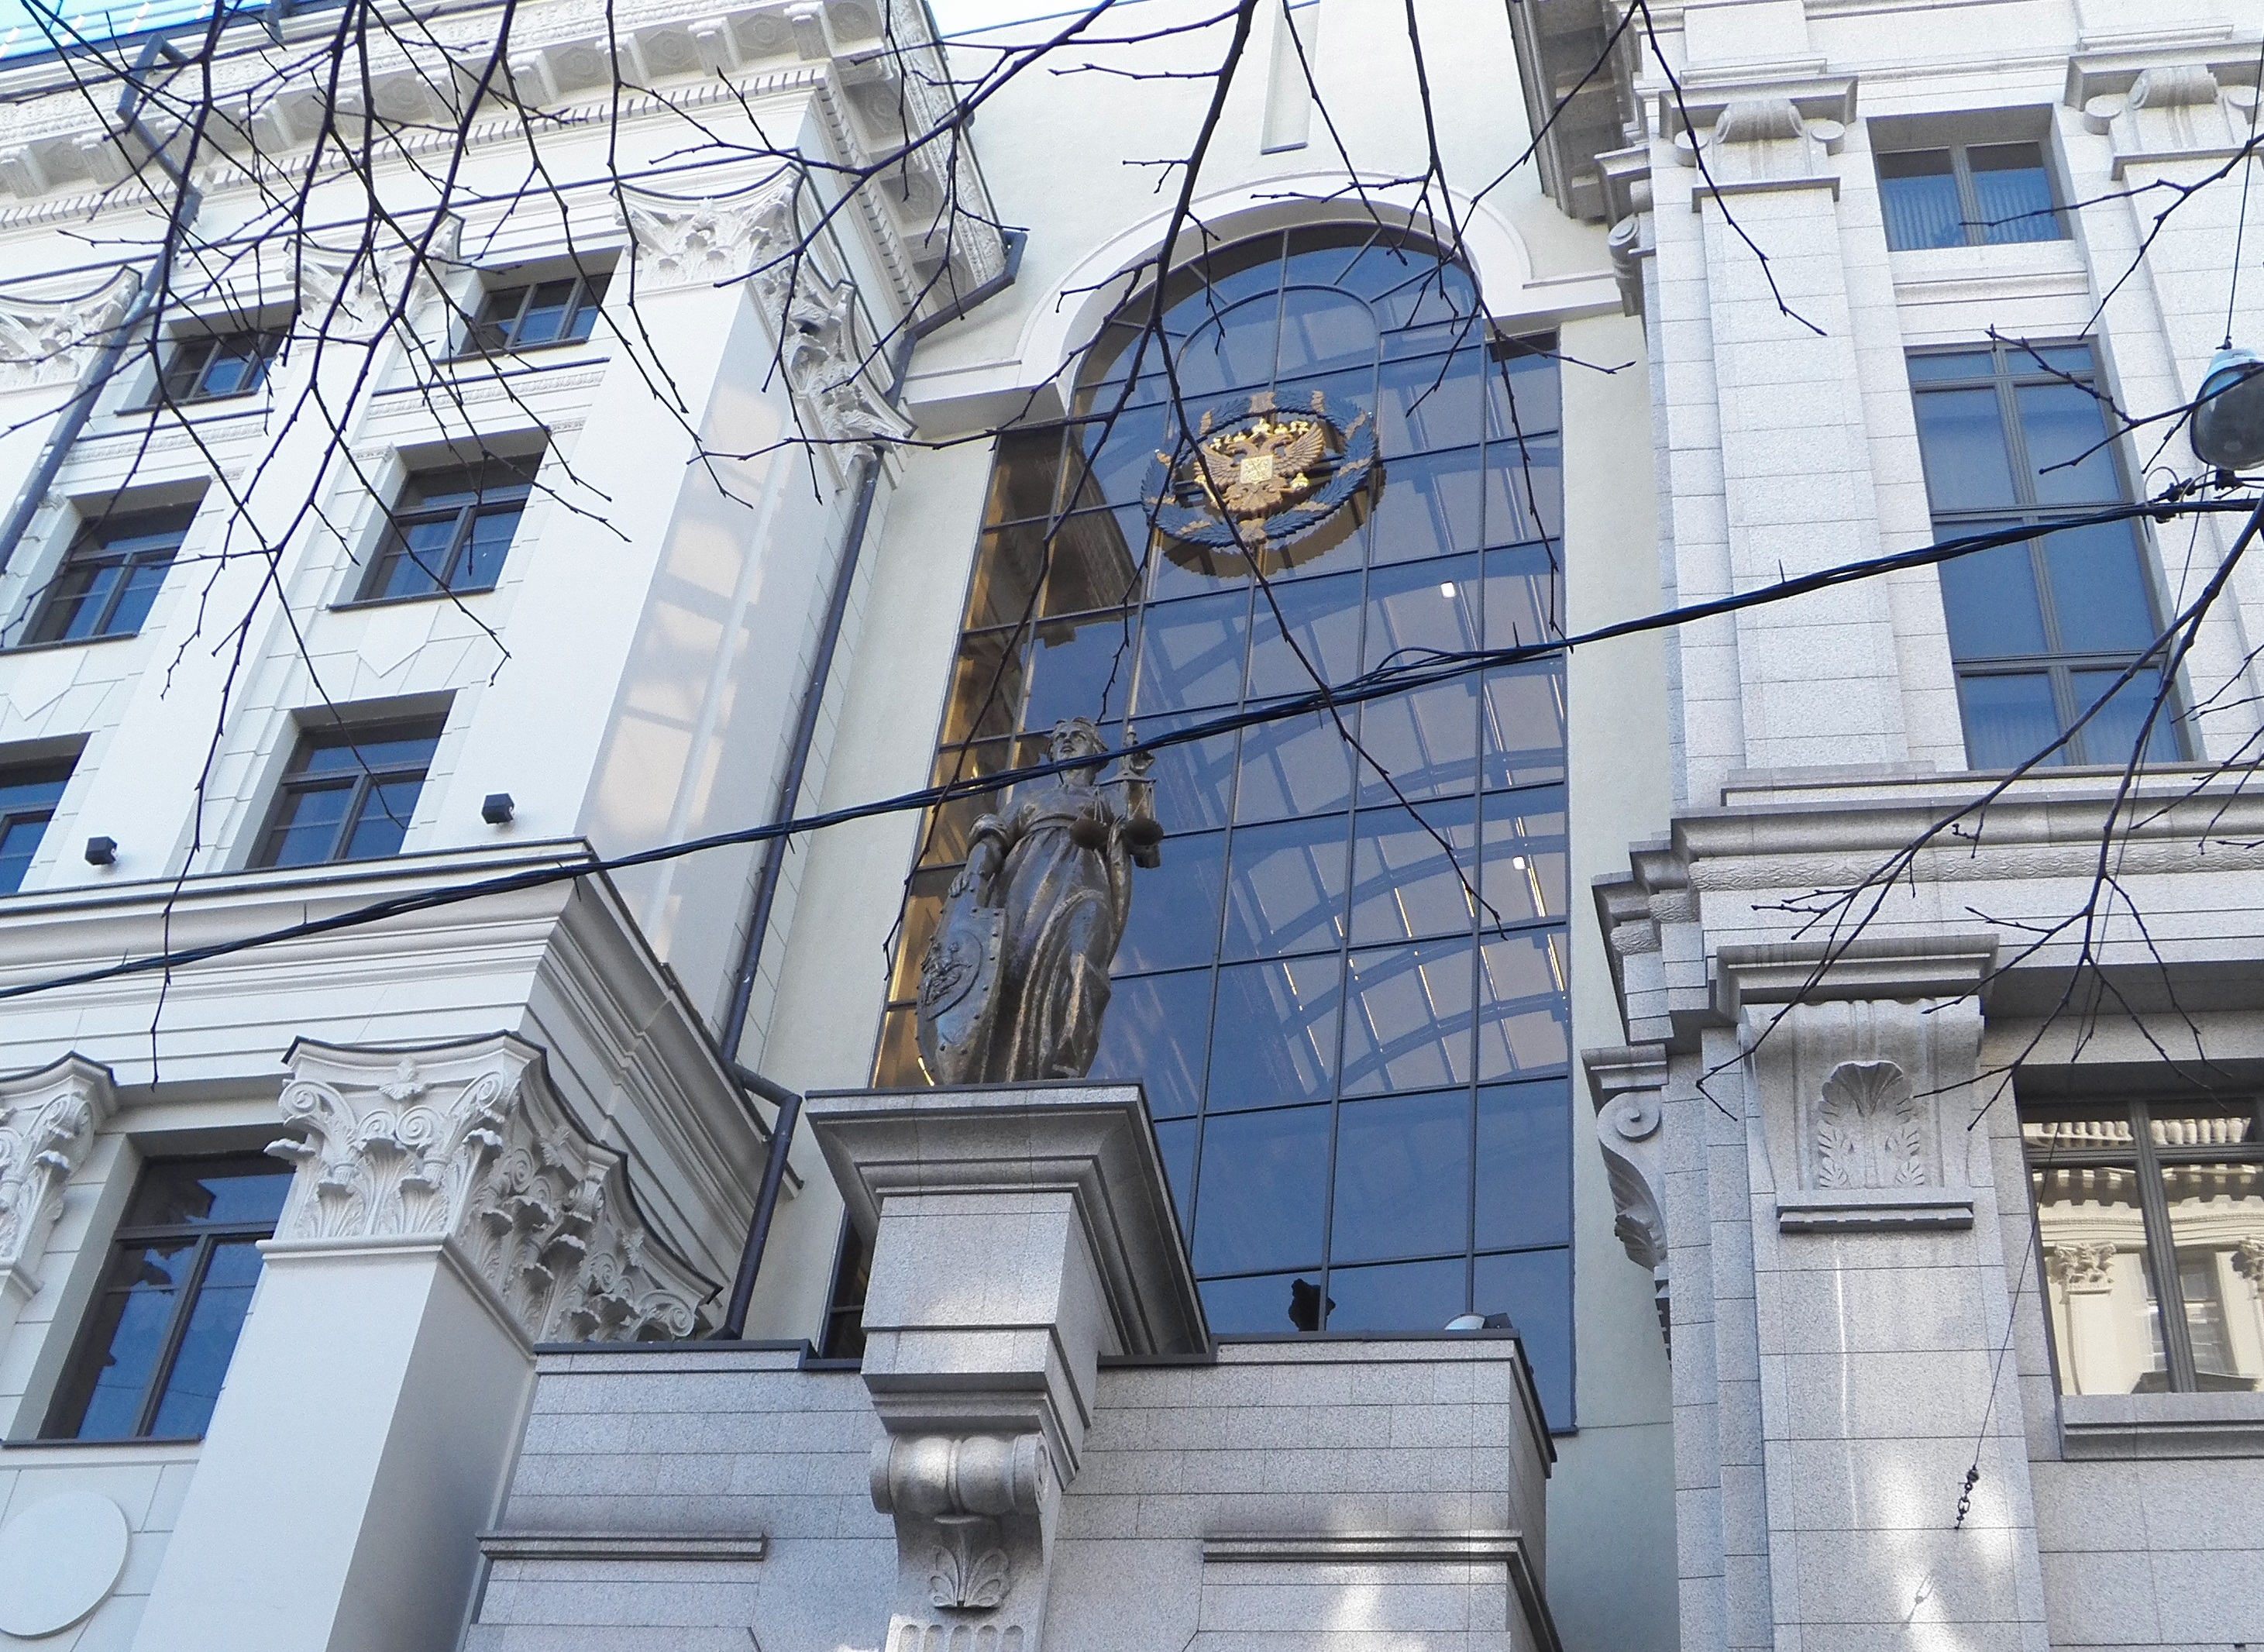 Изображено здание Верховного суда РФ